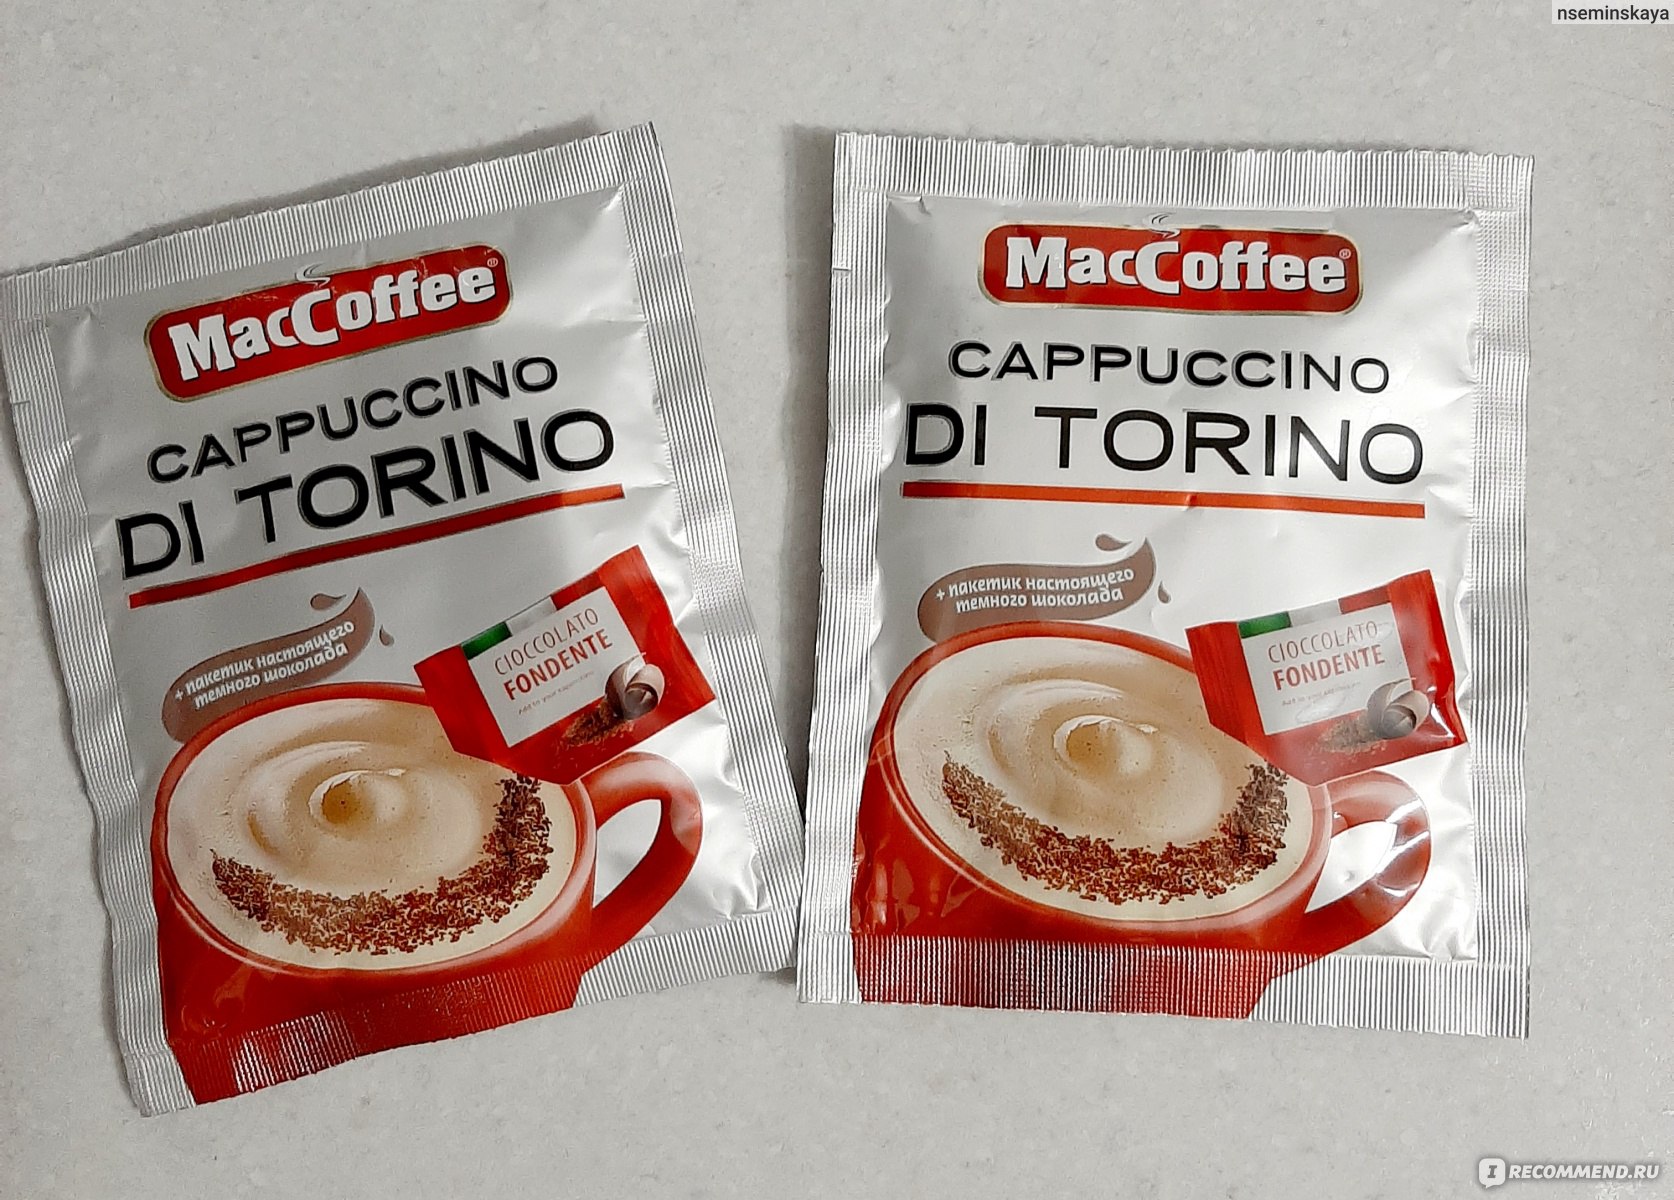 Маккофе ди торино. Маккофе капучино ди Торино. Кофе MACCOFFEE 3в1 капучино di Torino 25,5гр. Маккофе 3 в 1 ди Торино. Растворимый кофе MACCOFFEE Cappuccino di Torino.